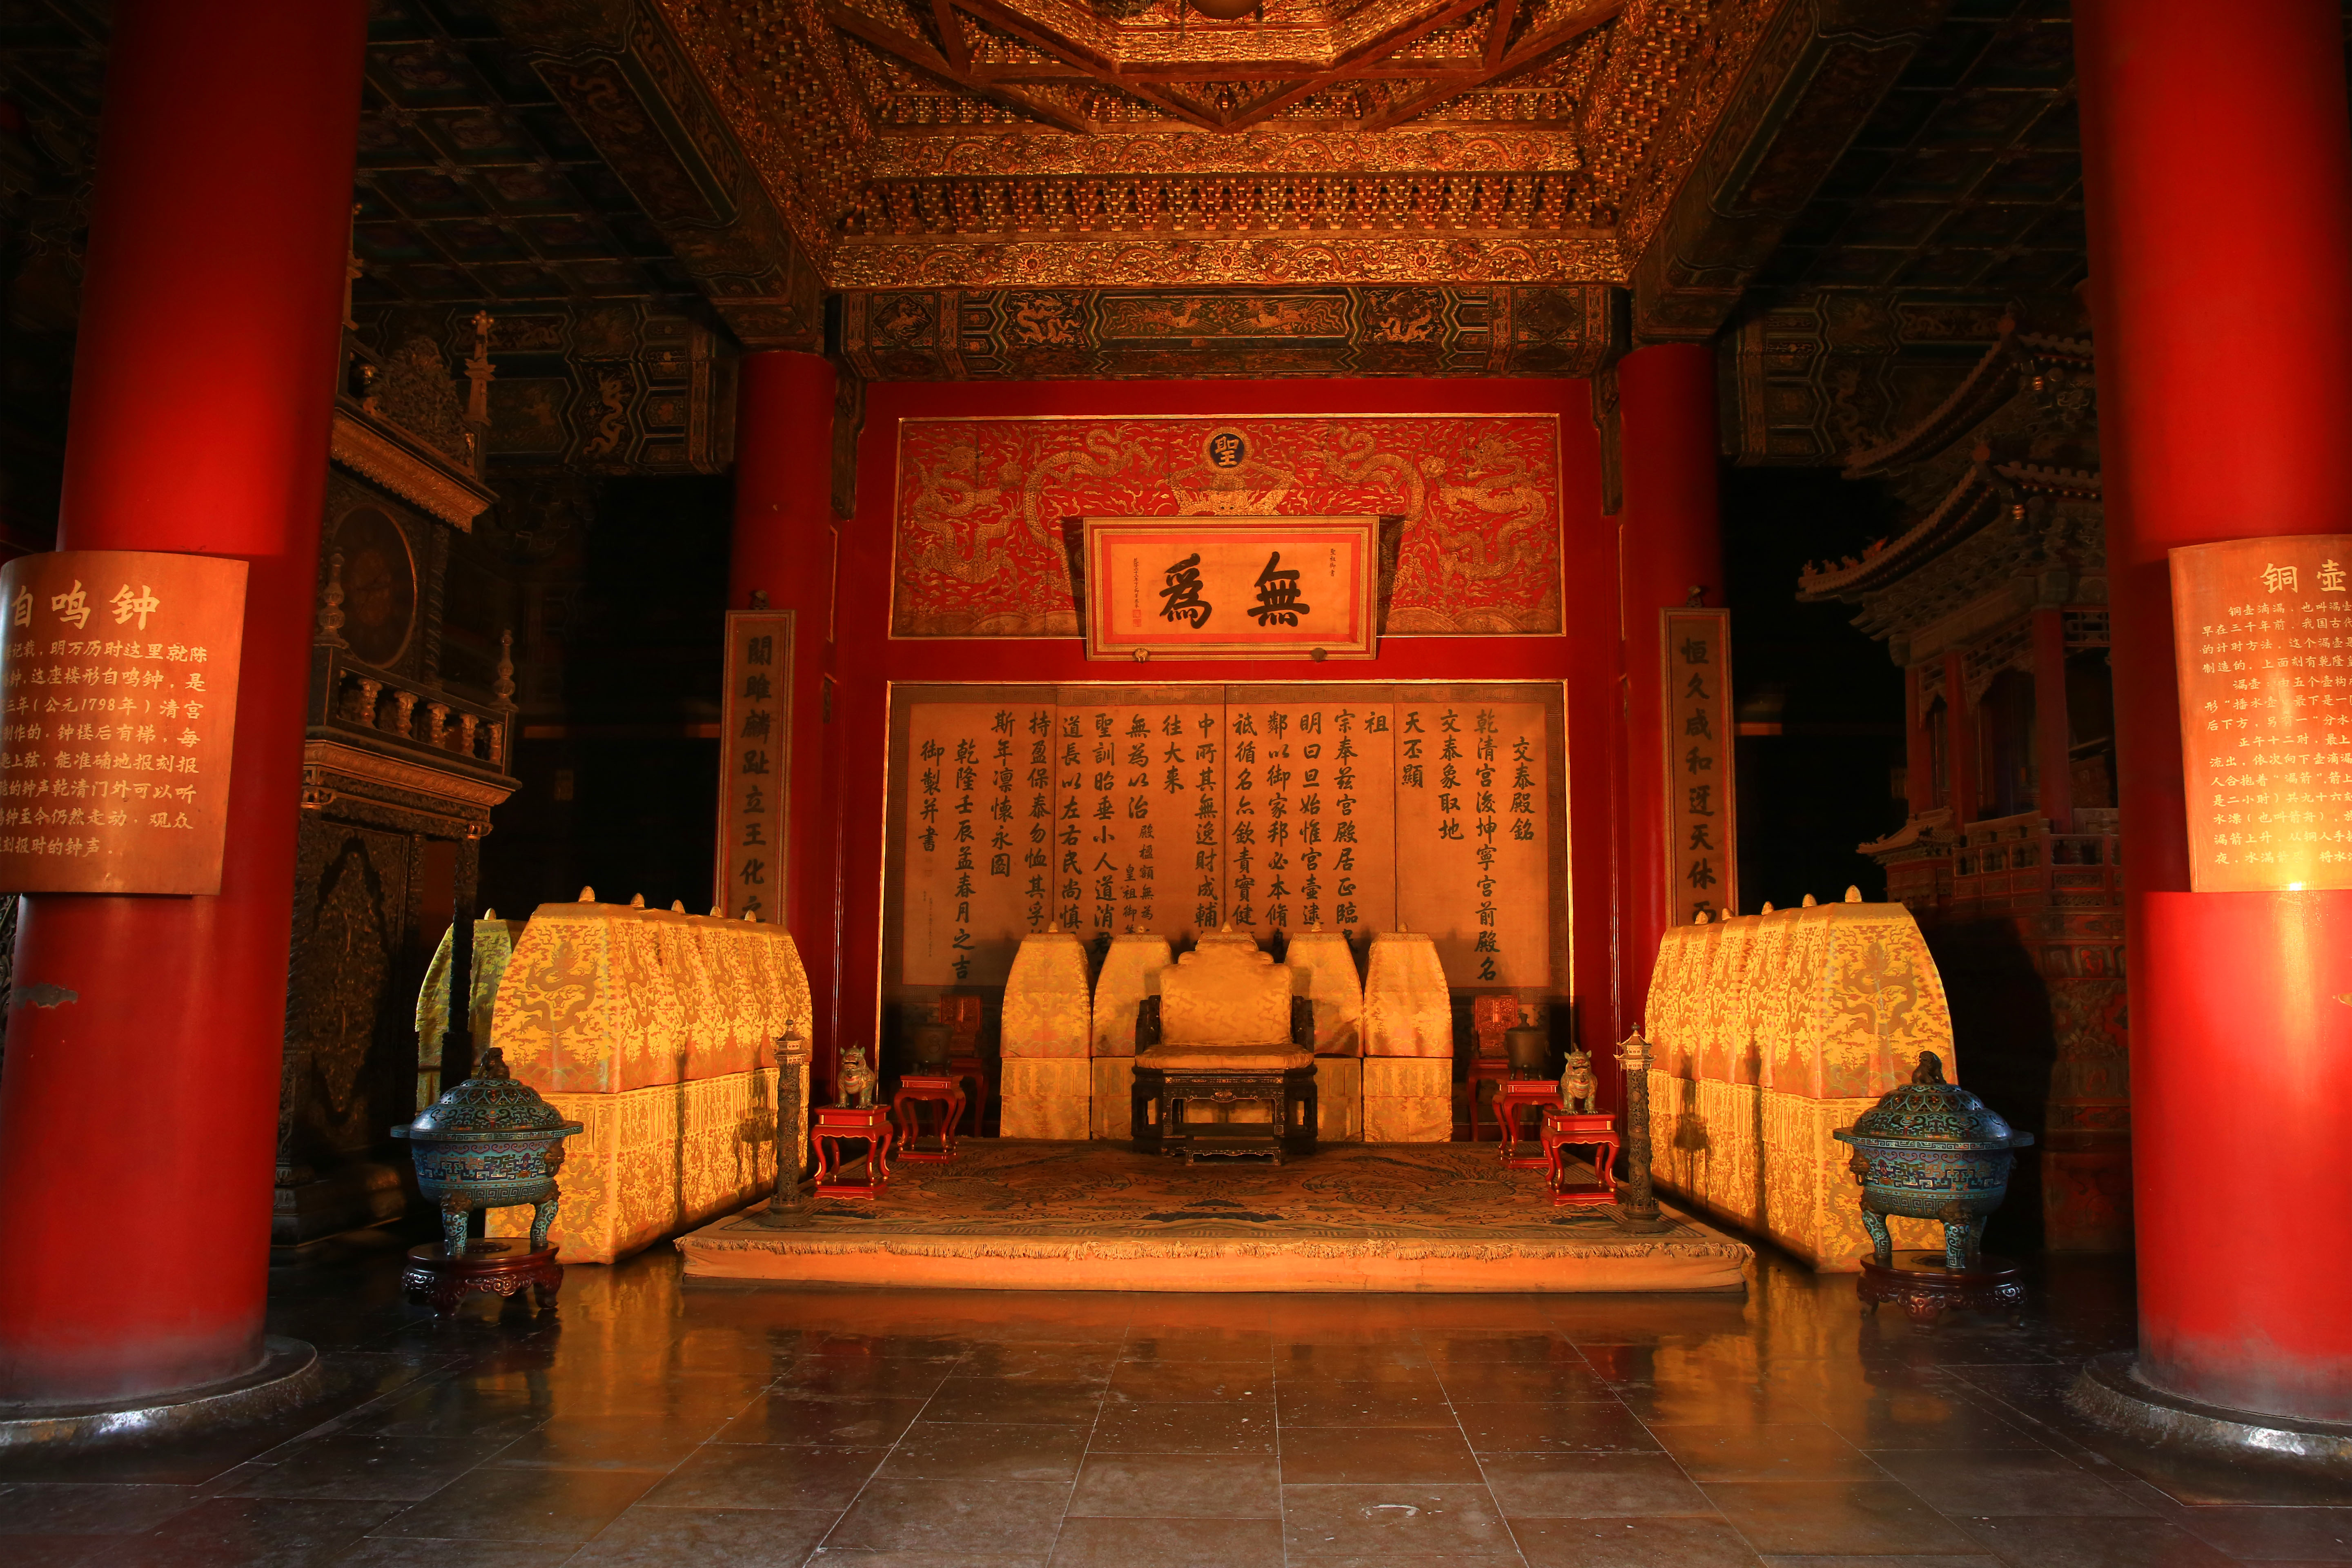 交泰殿是一处历史悠久的汉族宫殿建筑,属于北京故宫内廷后三宫之一